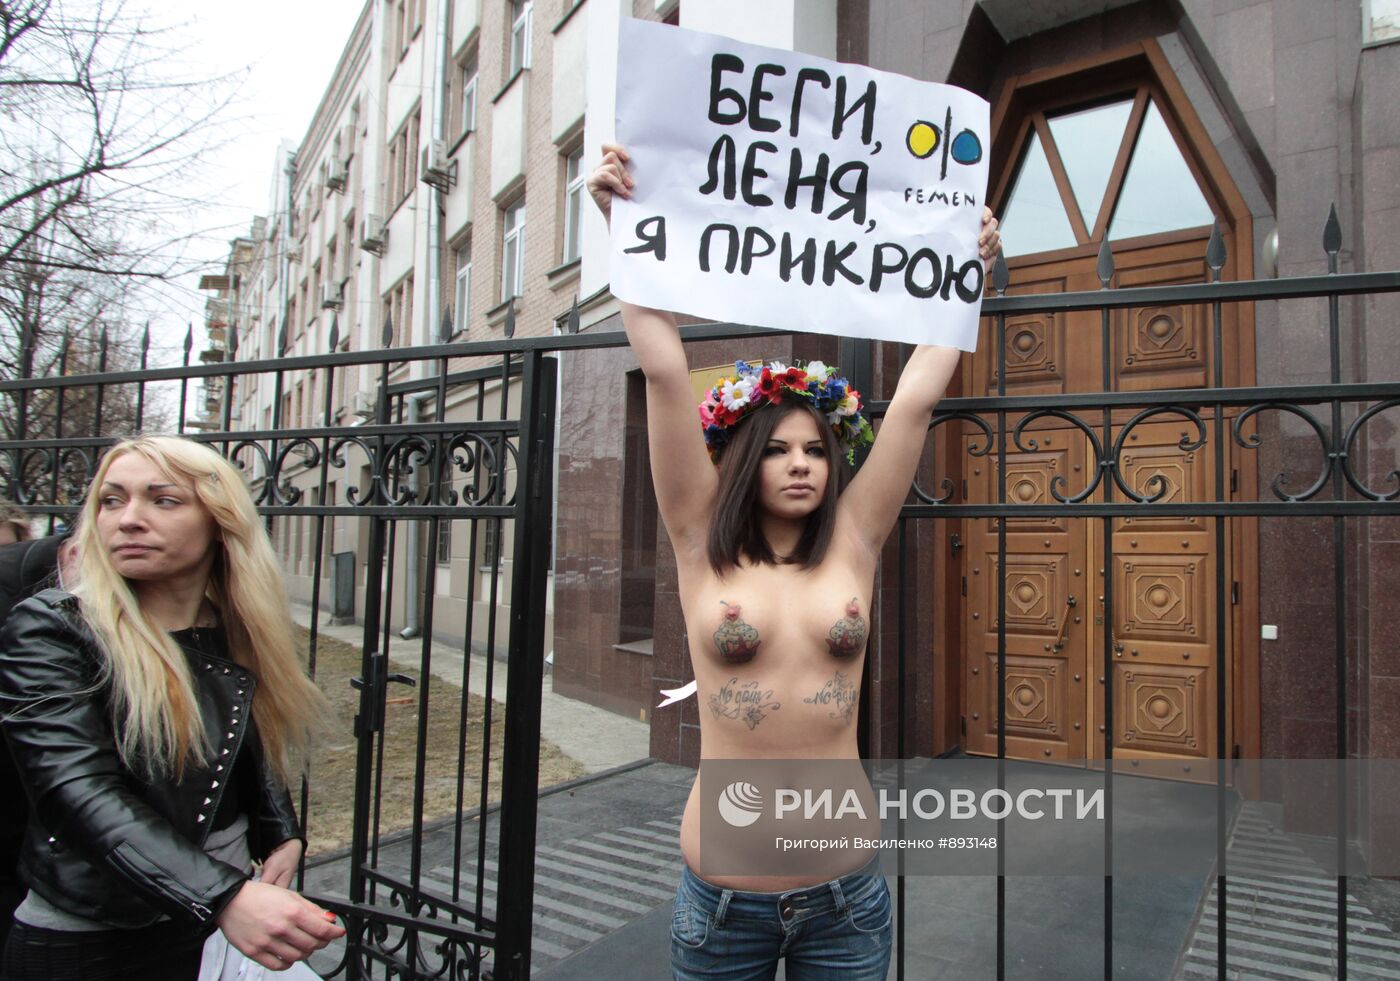 Акция Фемен перед Генпрокуратурой в Киеве